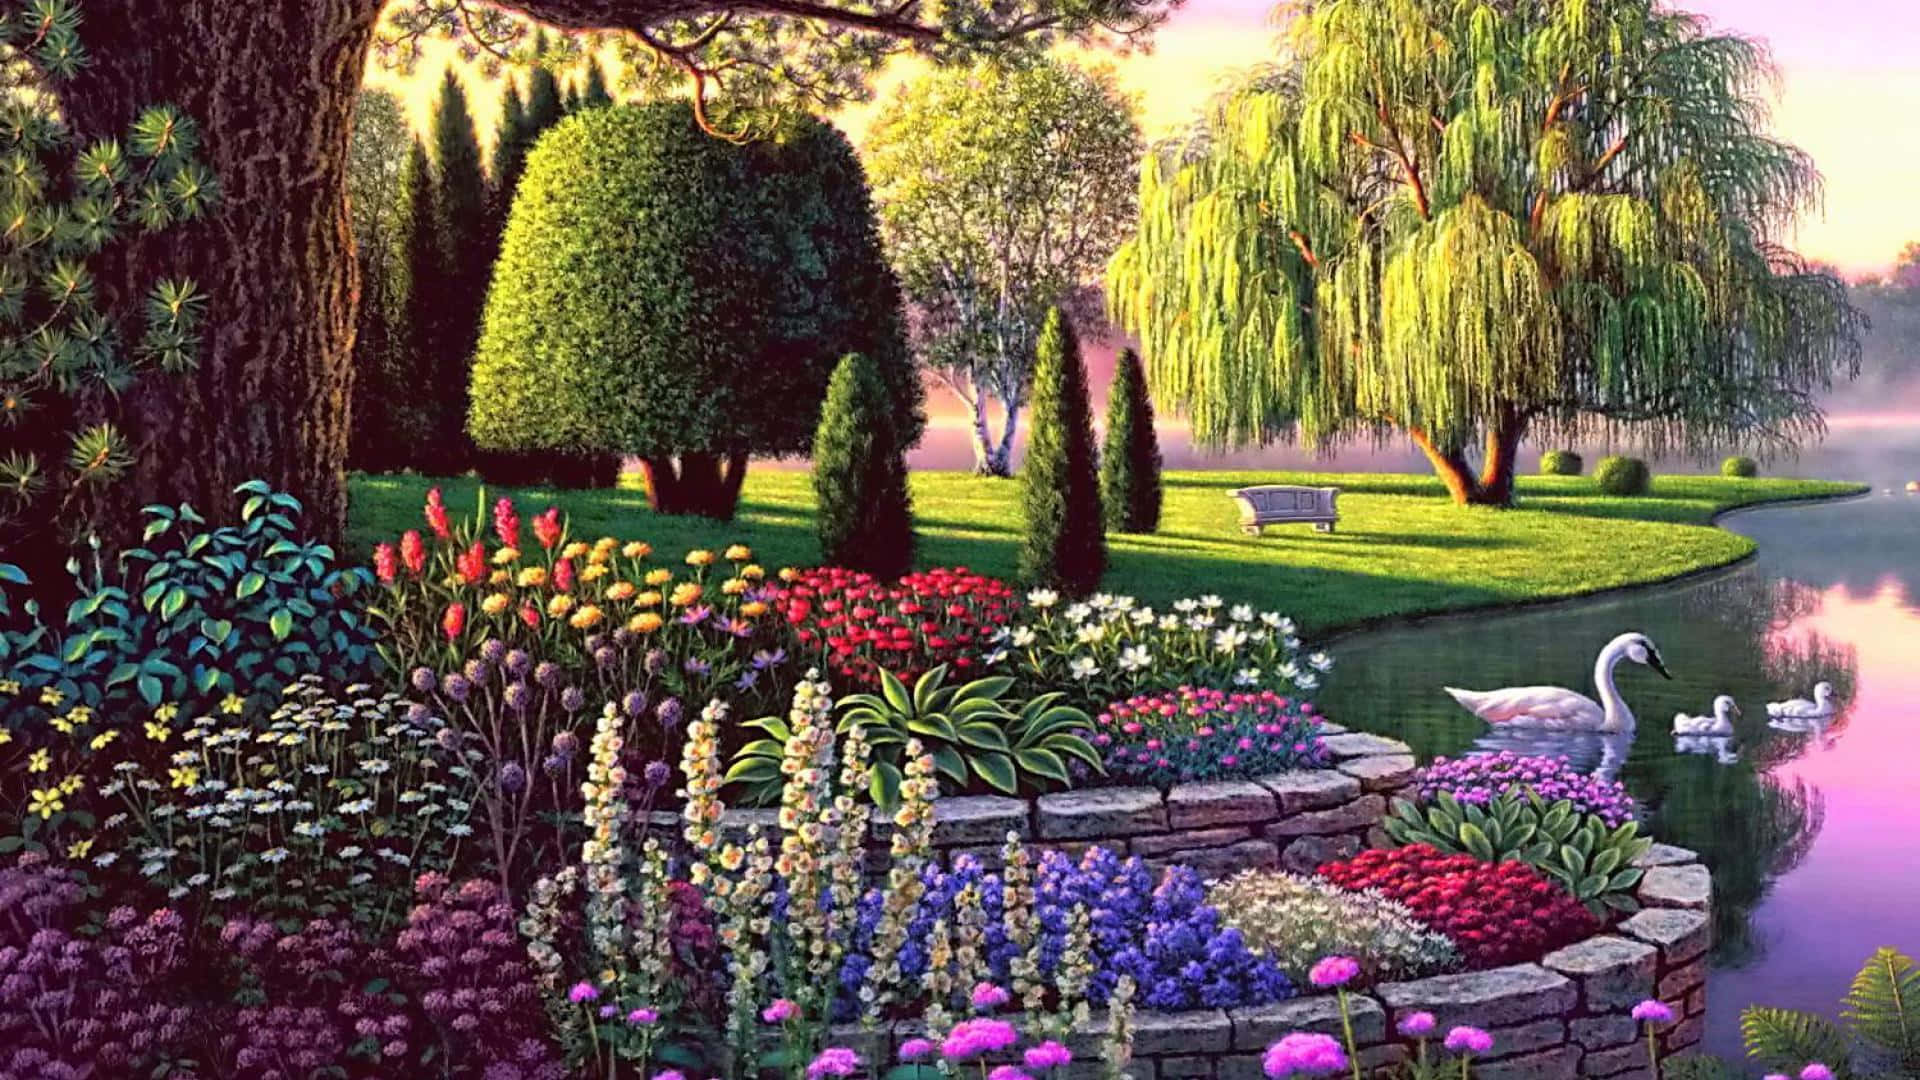 A Magical Journey through the Enchanted Garden Wallpaper